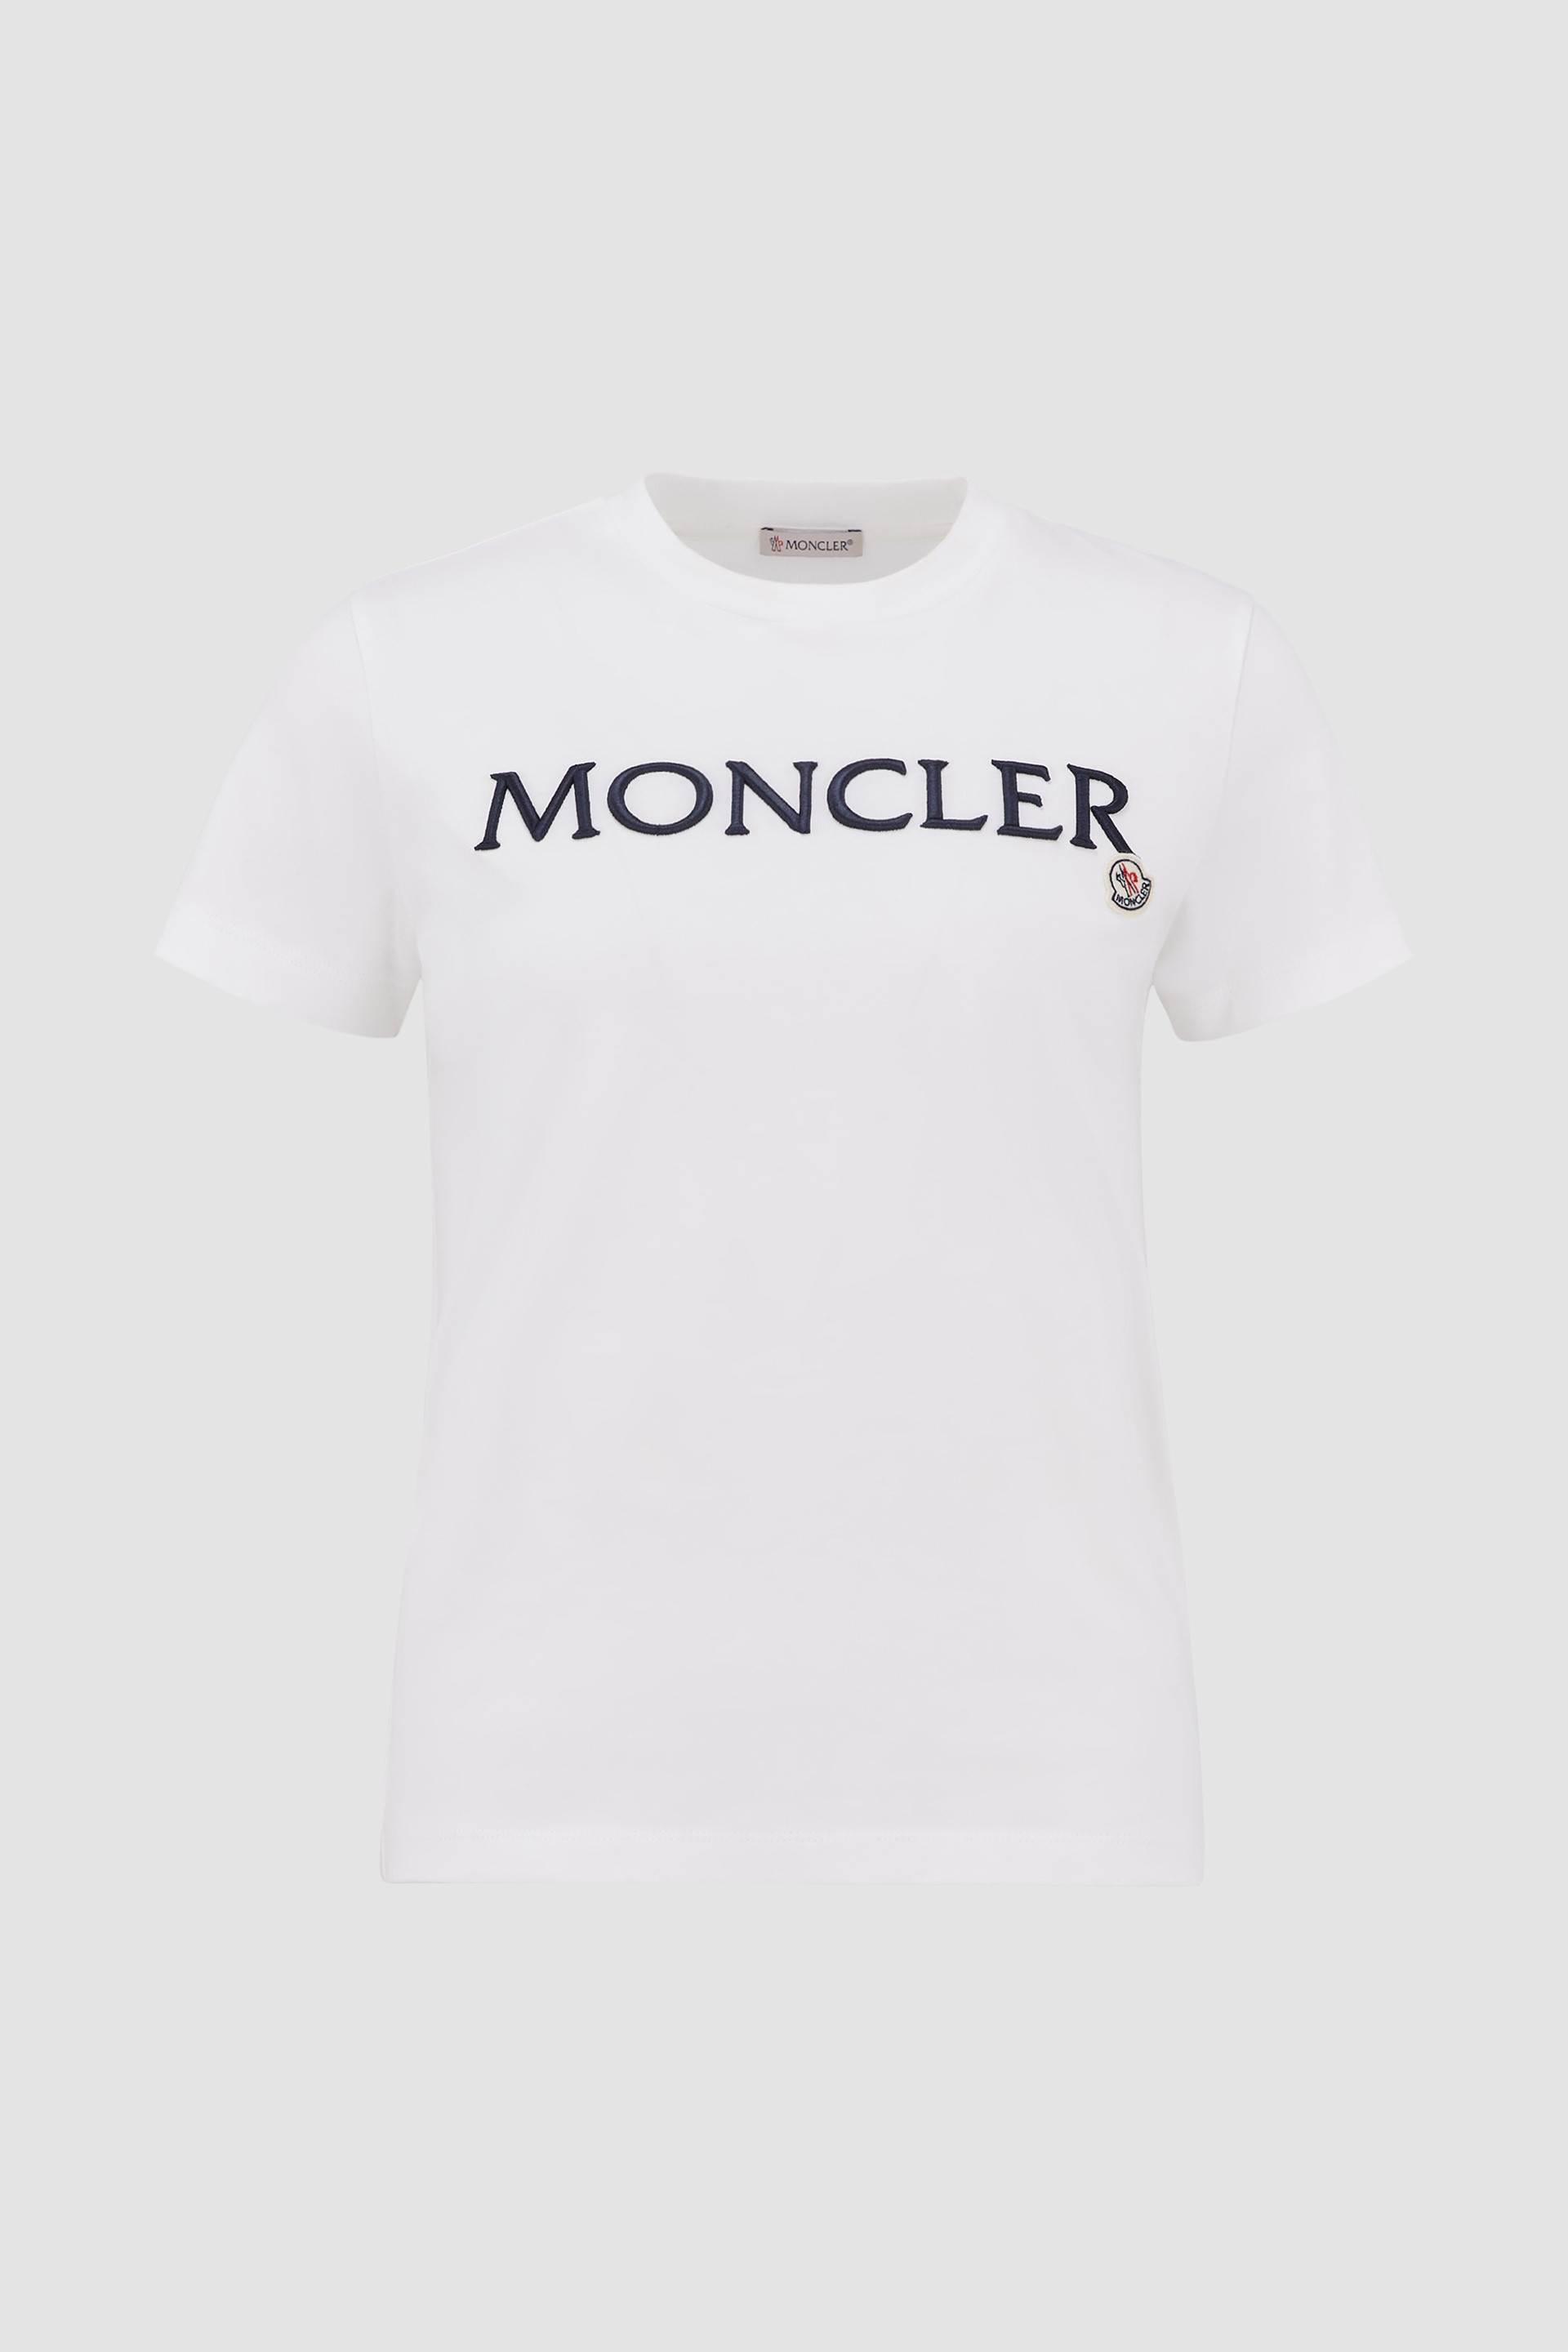 激安アウトレット!】 2021 Tシャツ XSサイズ ホワイト モンクレール 